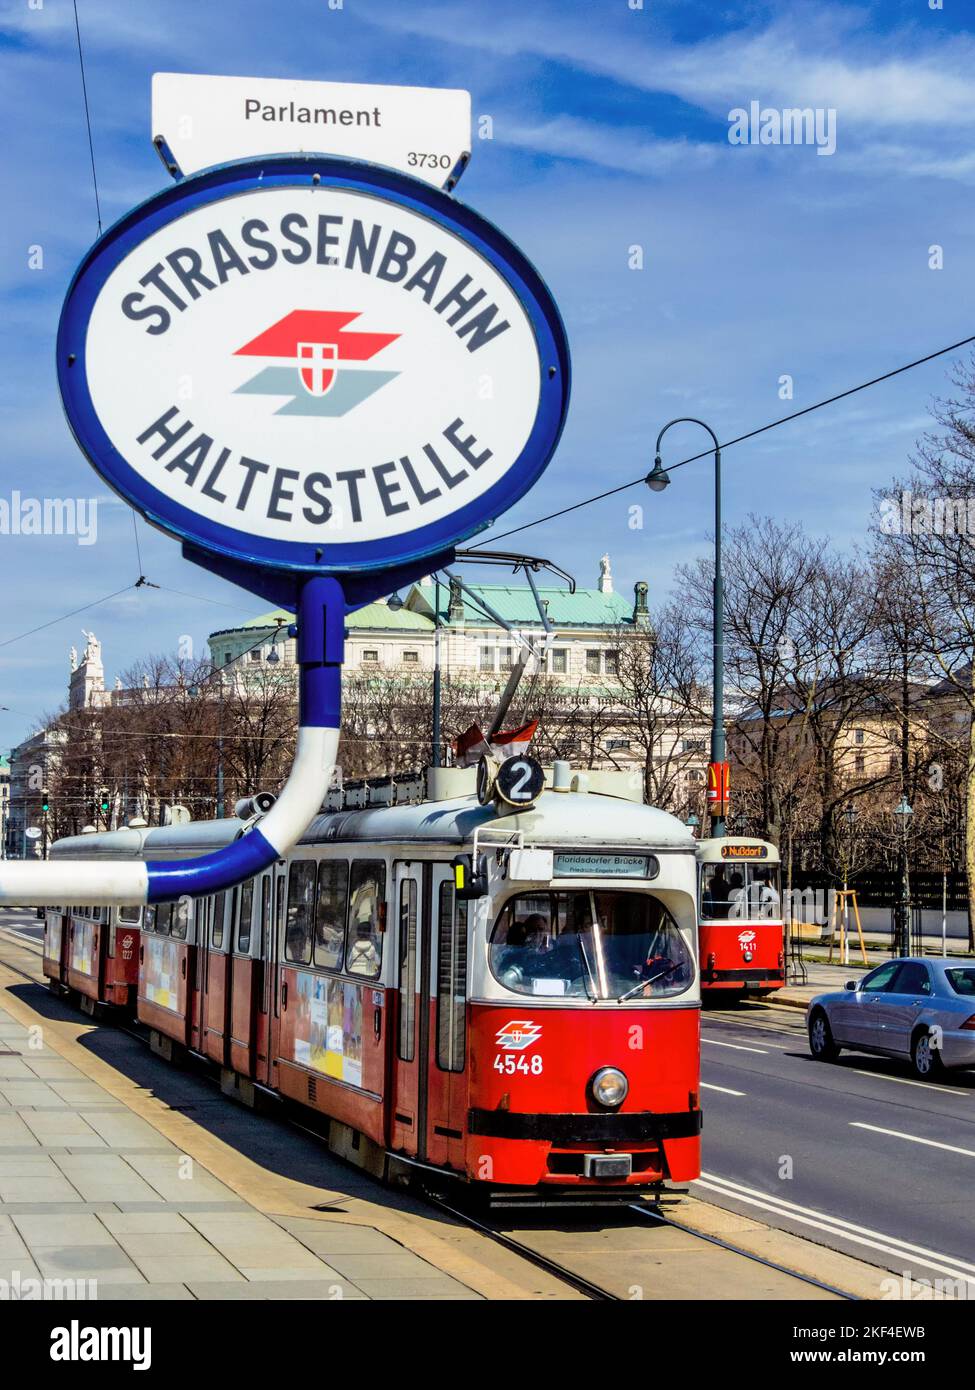 Die Strassenbahn in Wien, Österreich. Öffentlicher Nahverkehr in Städten, hält an einer Haltestelle beim Parlament, Stock Photo